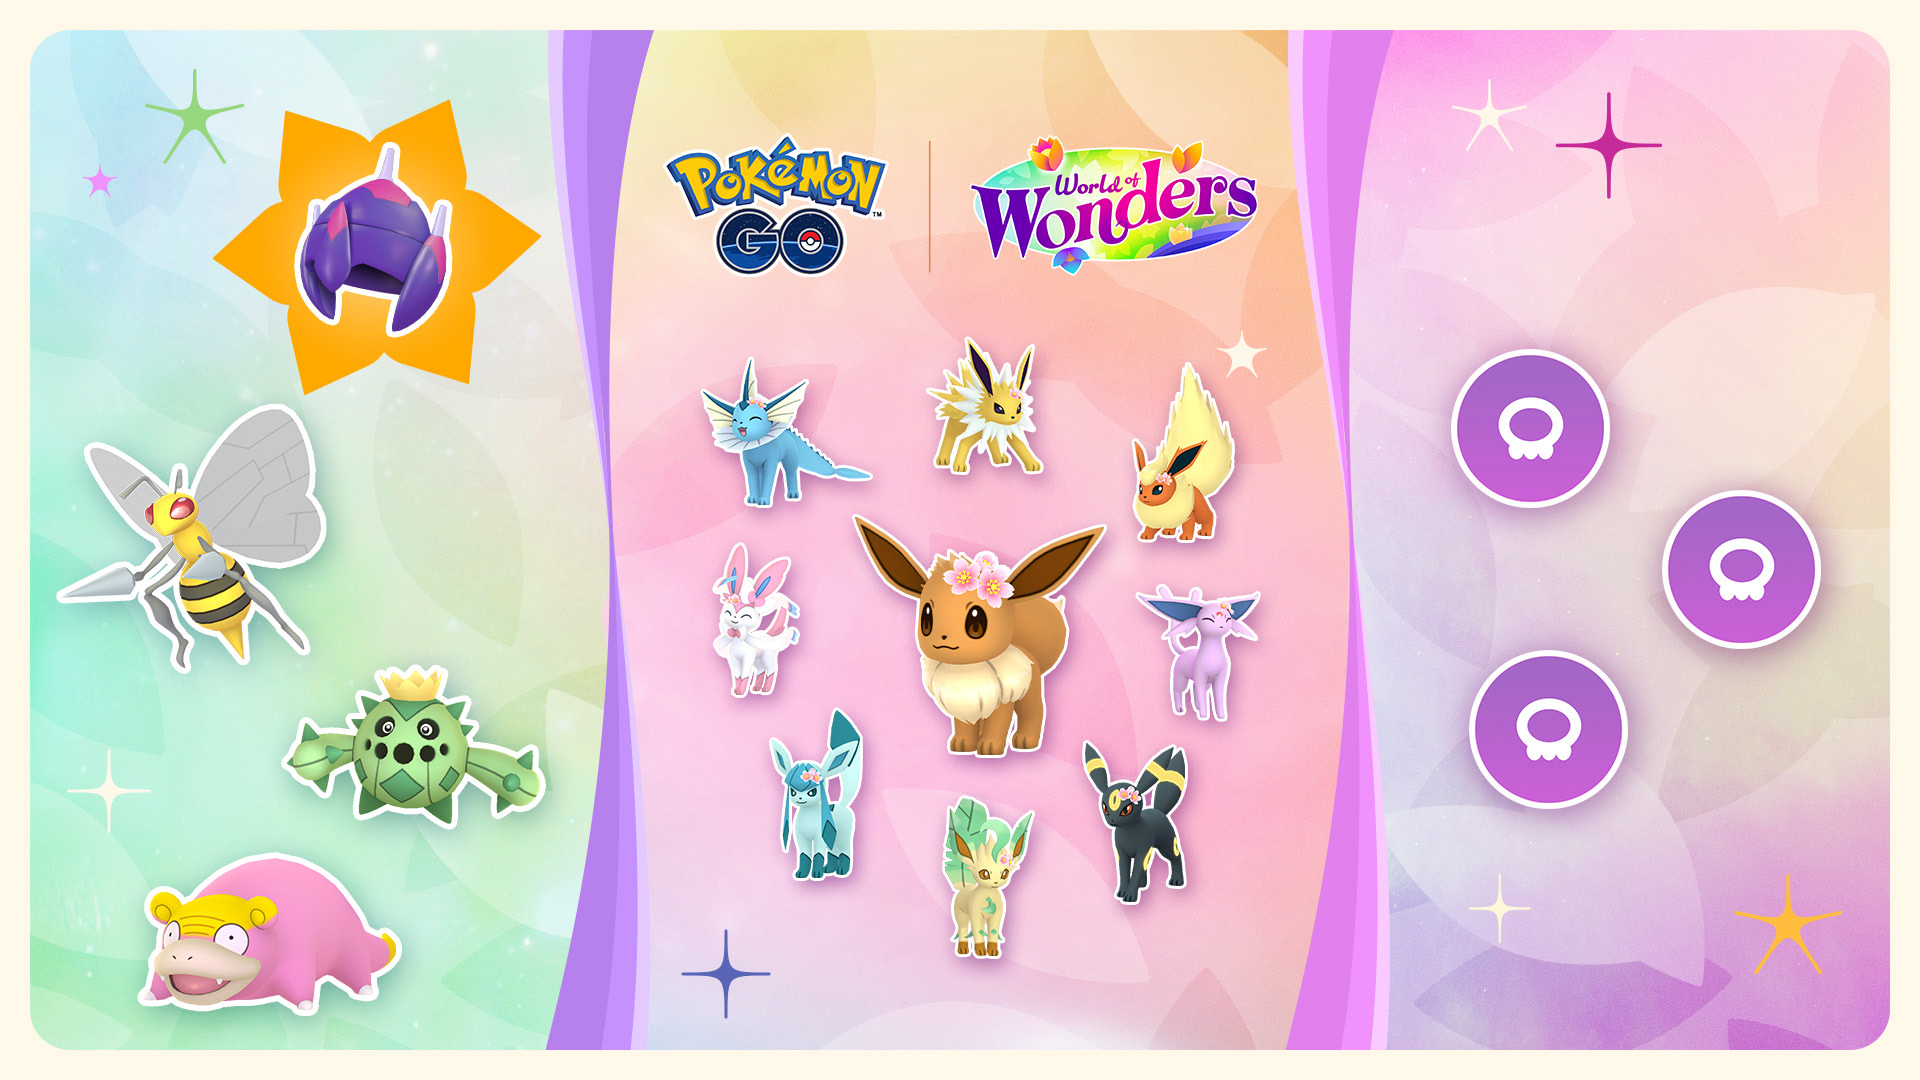 In Teil 2 des Wundertickets geht unsere Reise durch die magische Welt weiter – seid gespannt auf Evoli und seine fantastischen Entwicklungen! – Pokémon GO